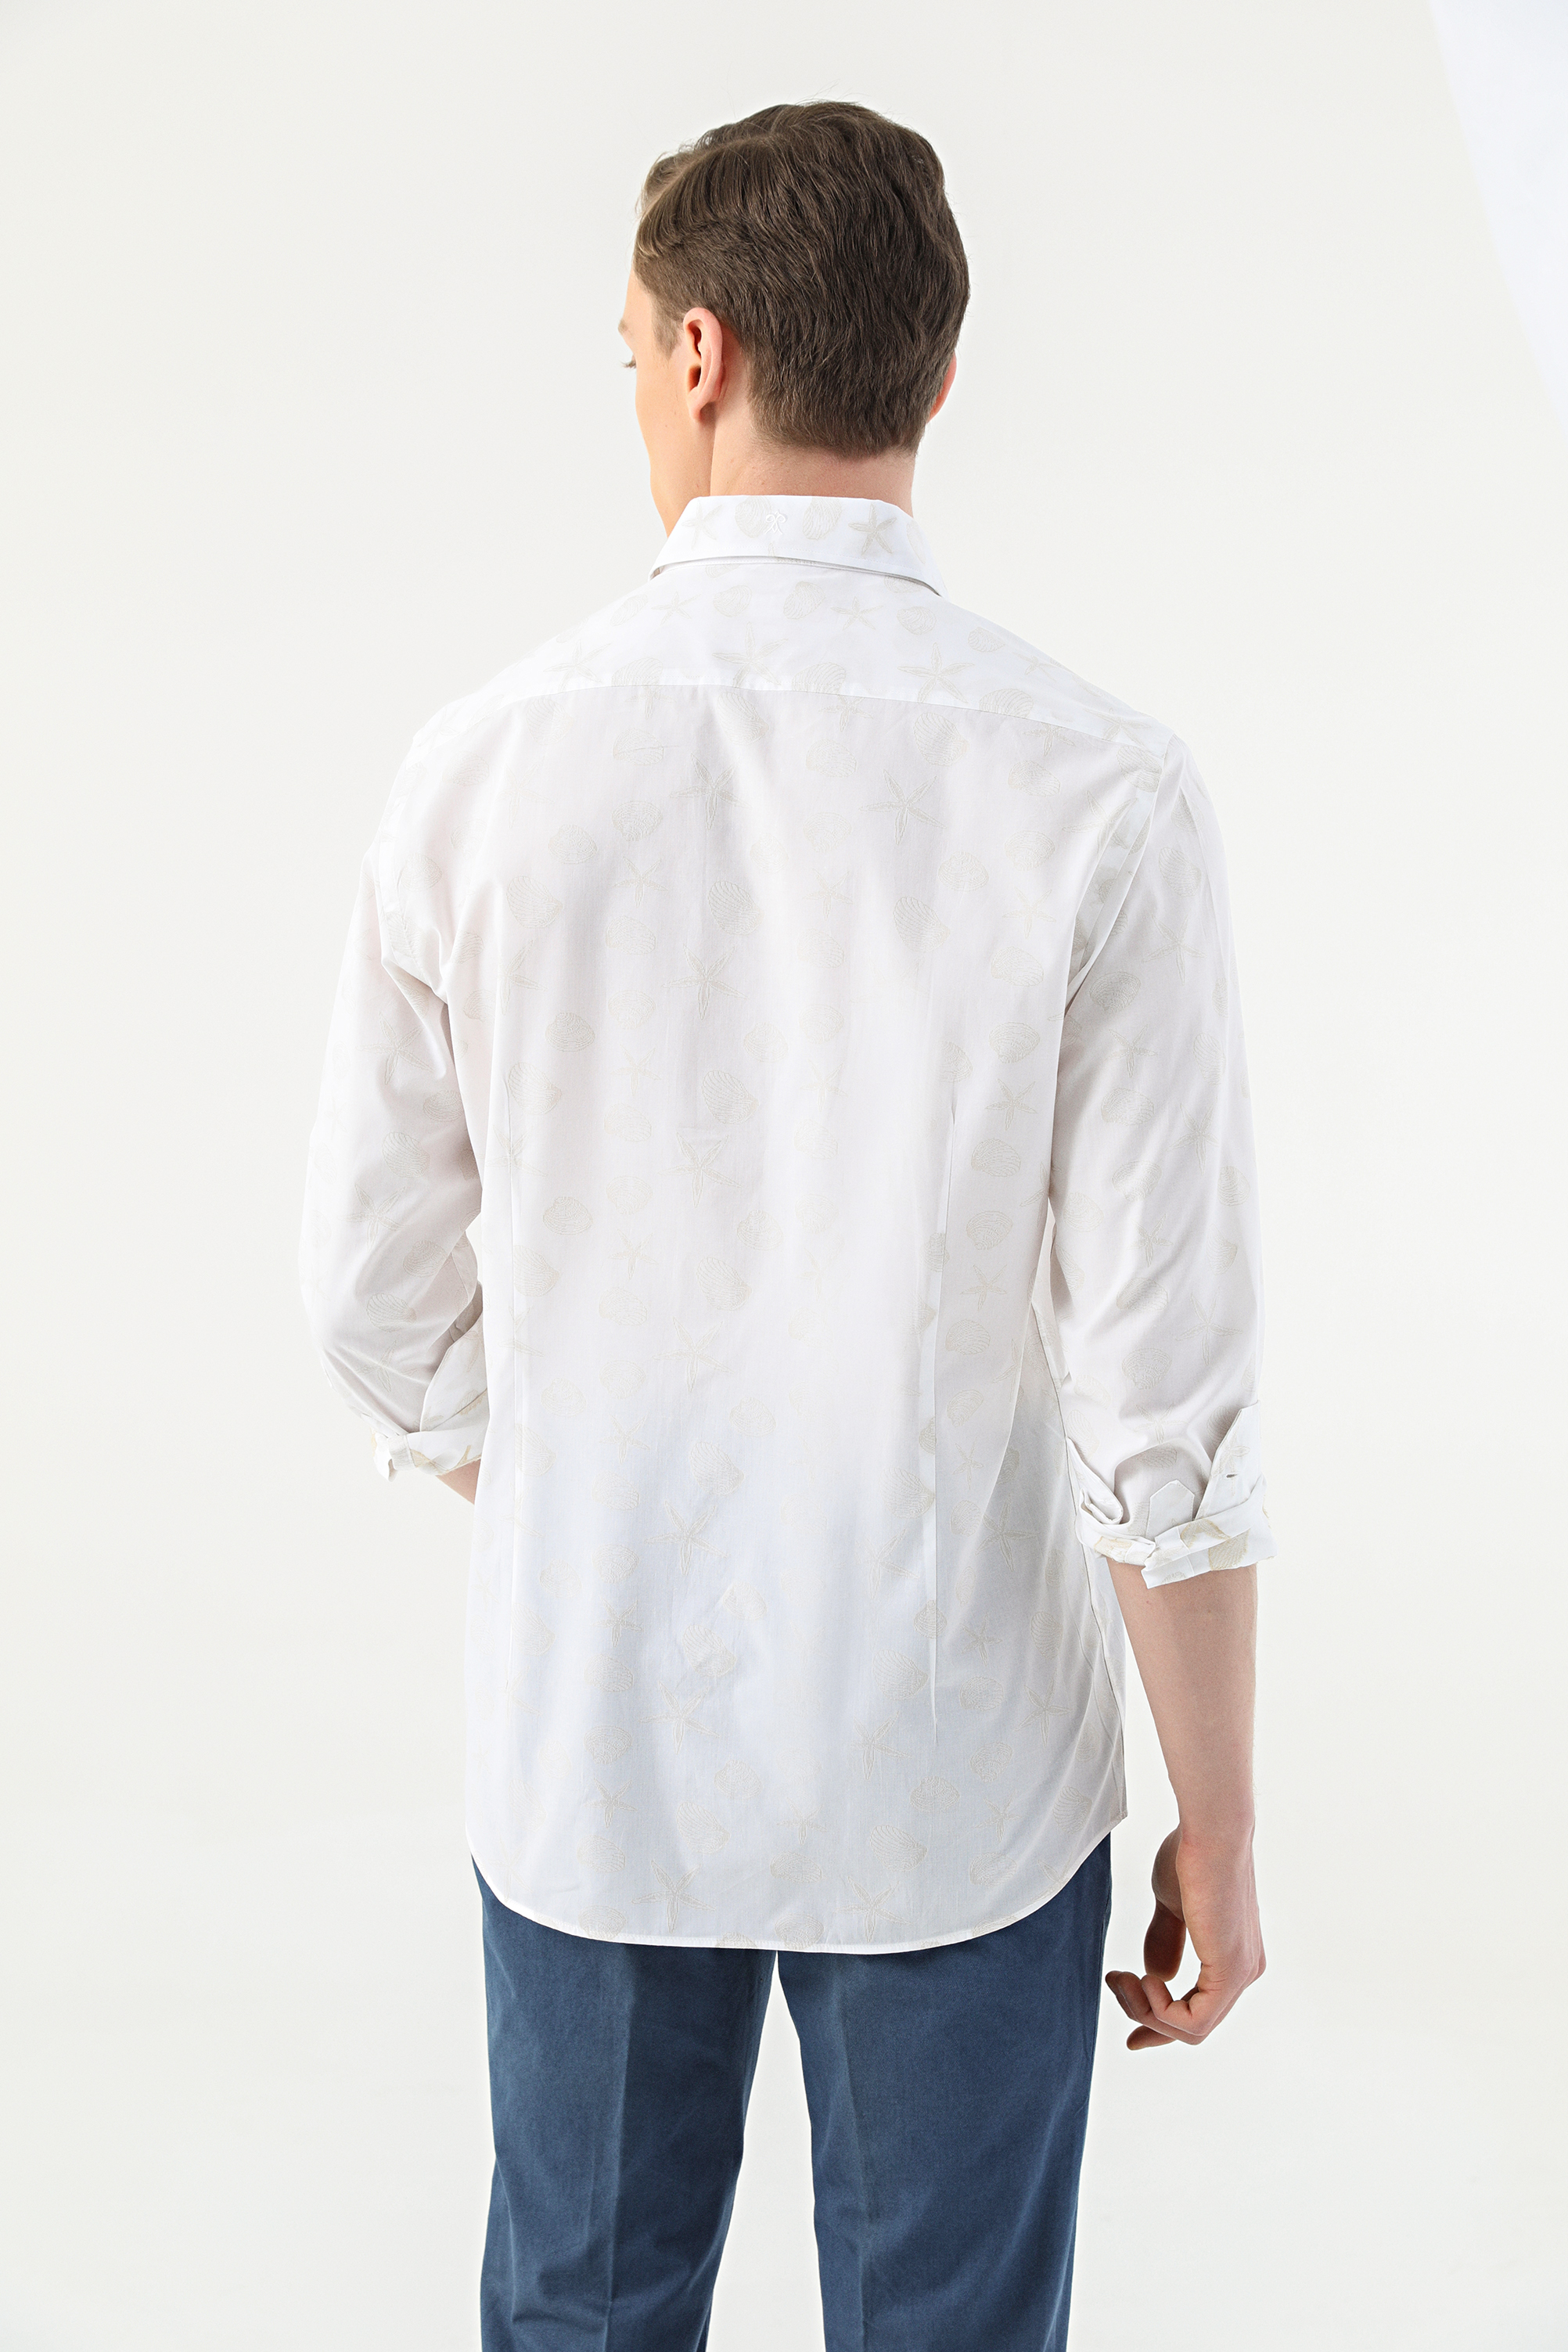 Damat Tween Damat Slim Fit Beyaz Desenli %100 Pamuk Gömlek. 4